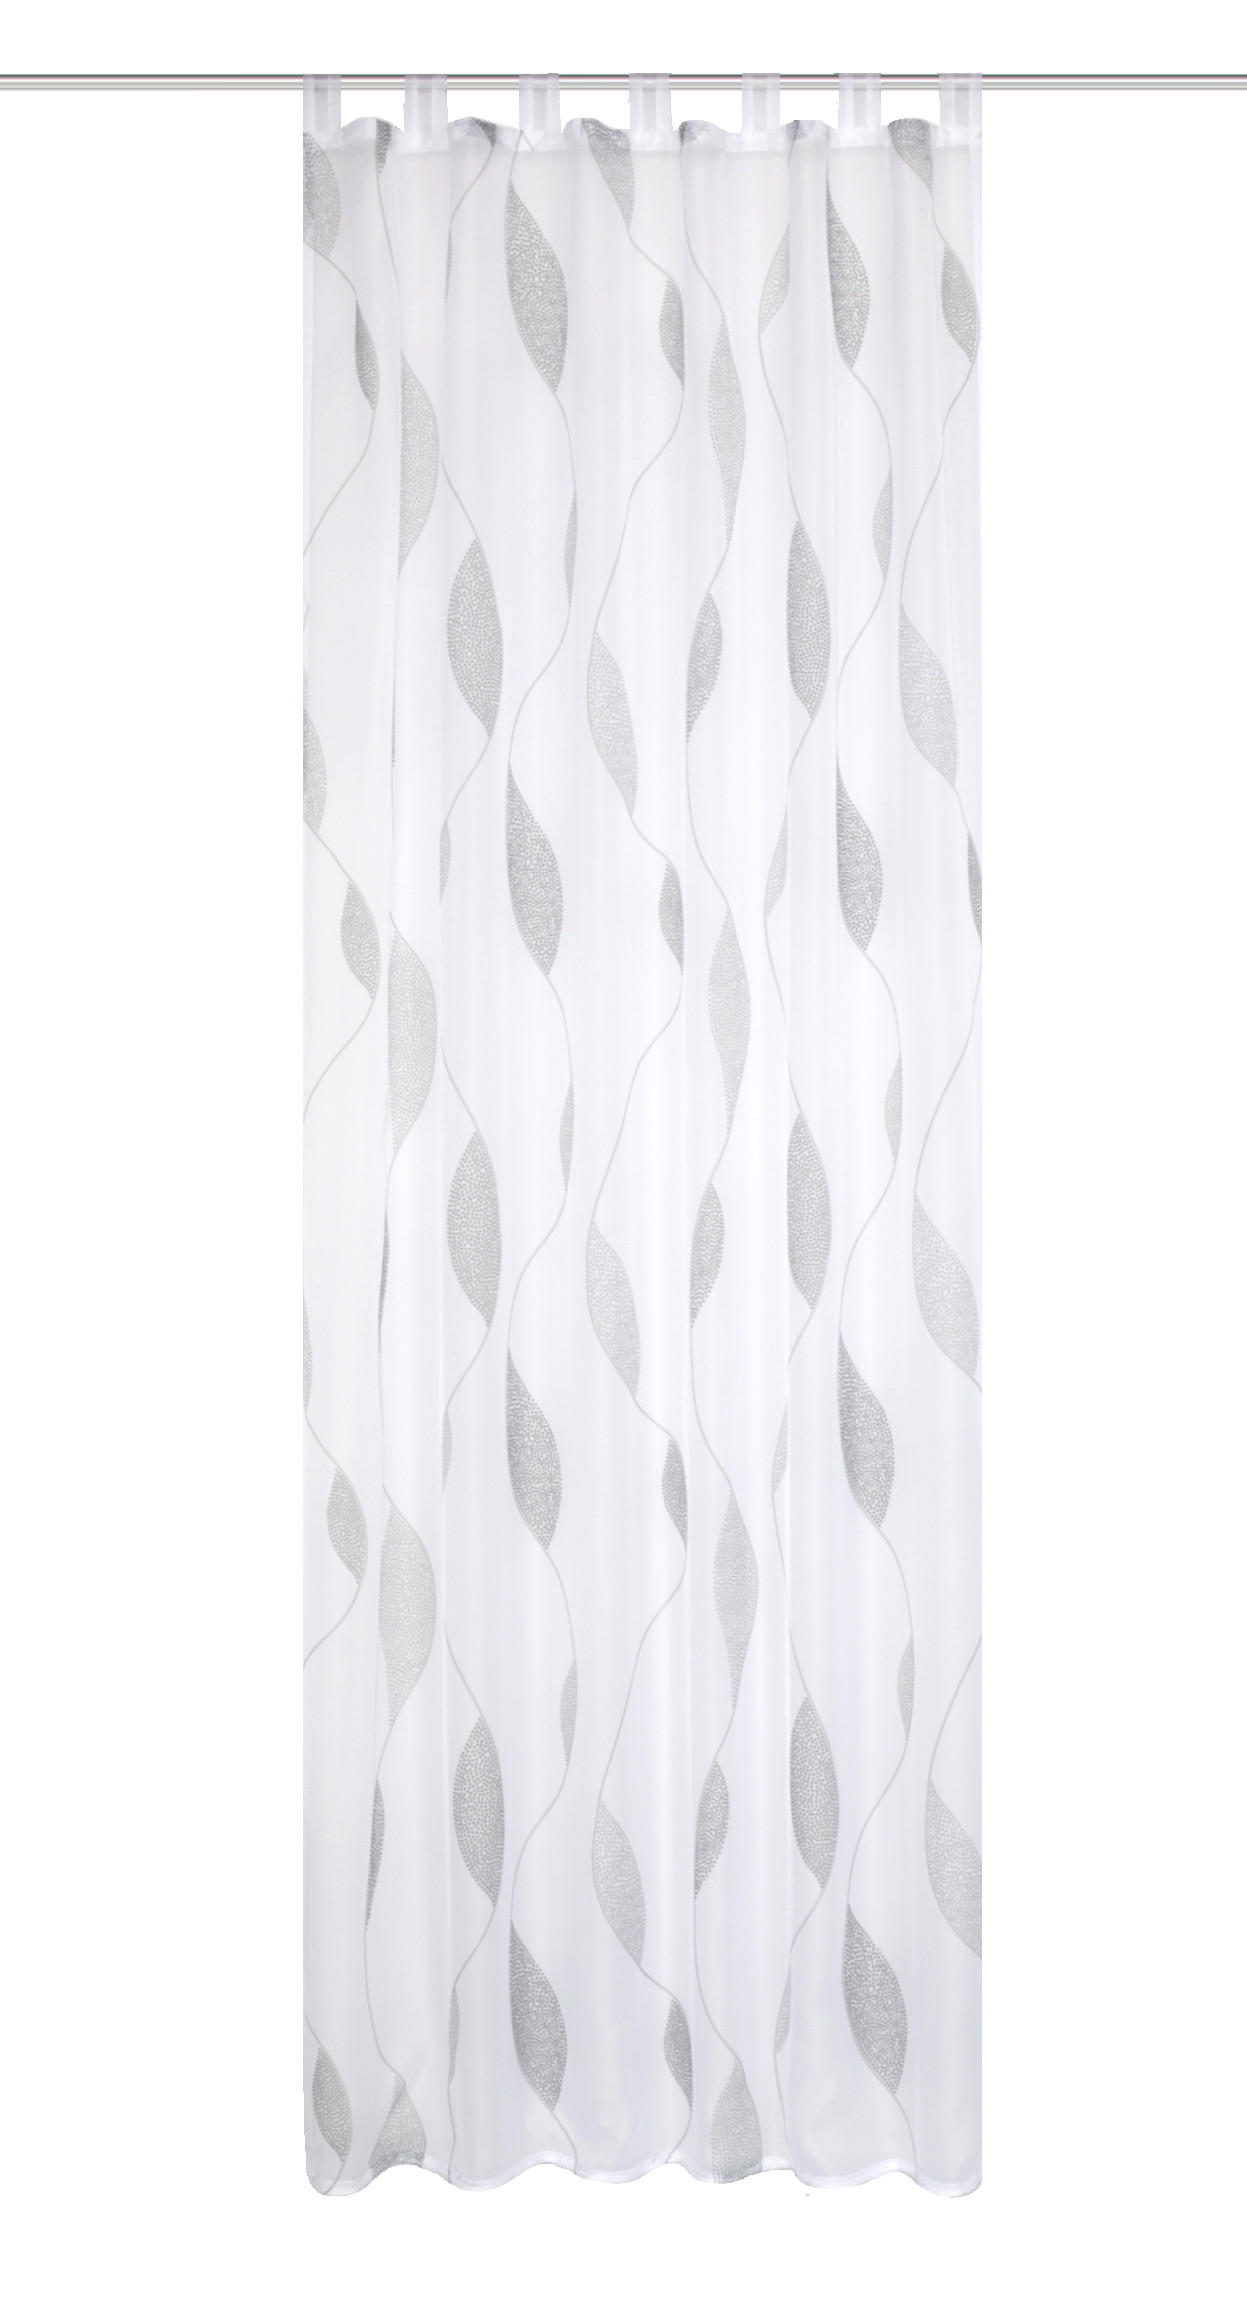 SCHLAUFENSCHAL  transparent  140/175 cm   - Taupe/Grau, KONVENTIONELL, Textil (140/175cm) - Schmidt W. Gmbh